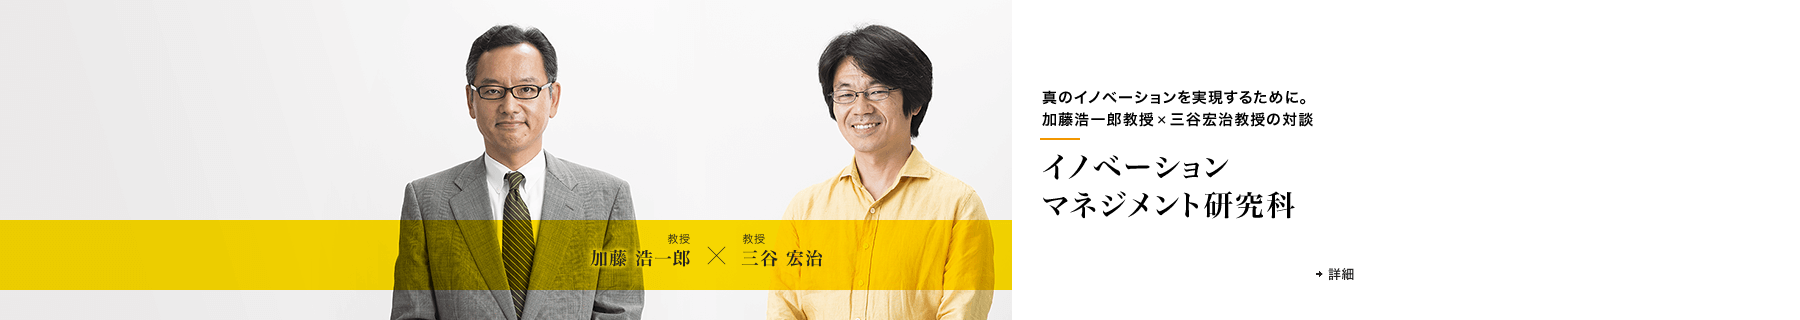 真のイノベーションを実現するために。加藤浩一郎教授×三谷宏治教授の対談 イノベーションマネジメント研究科